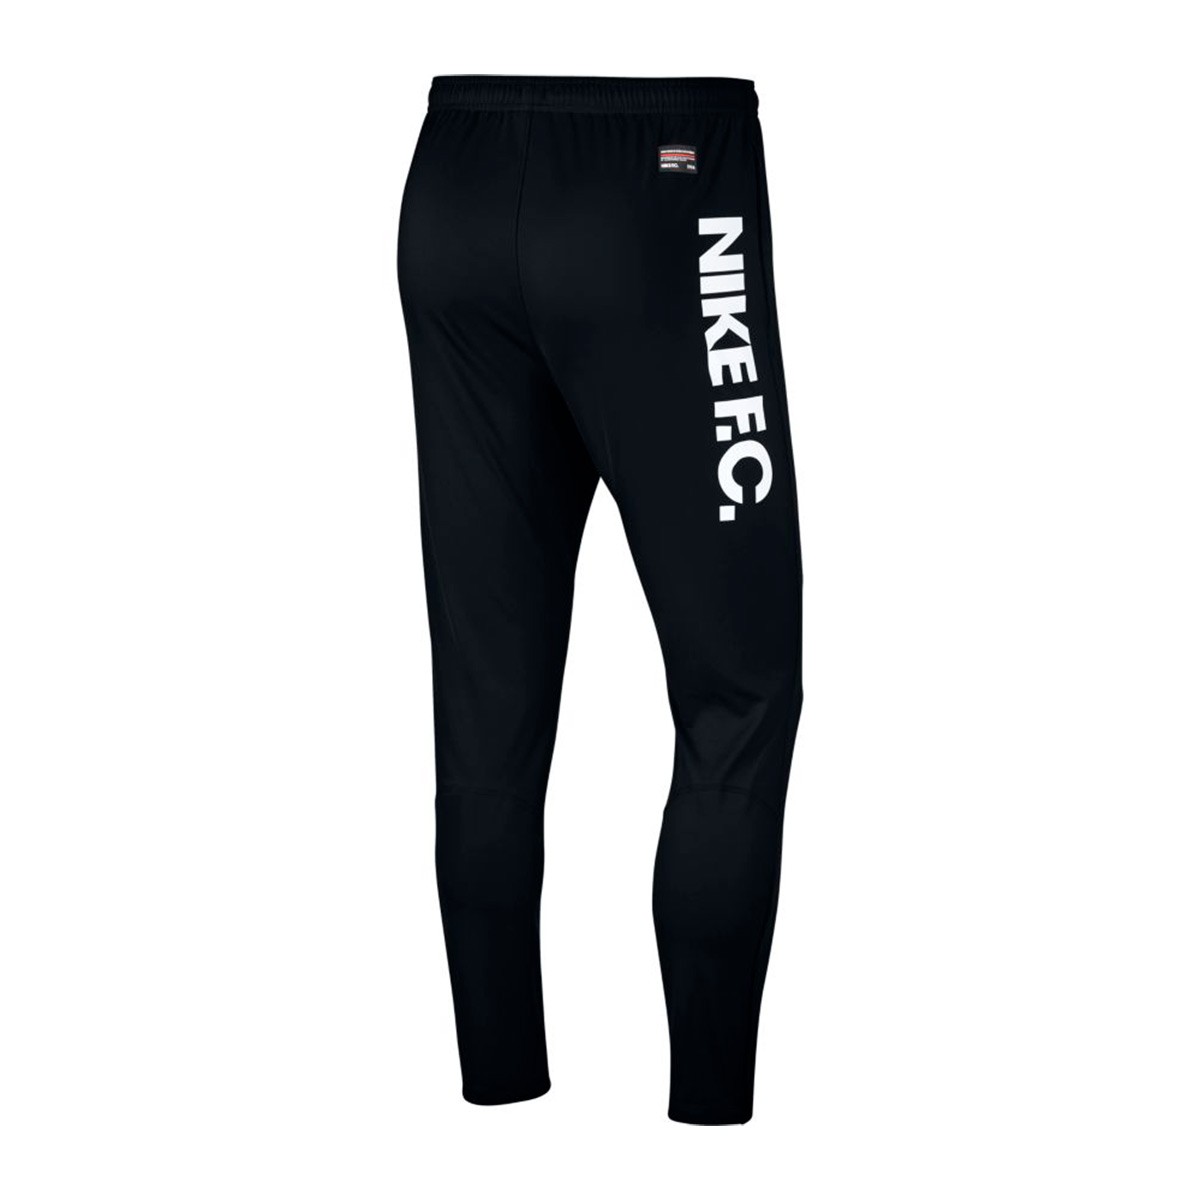 Long pants Nike Nike F.C. Black-White 